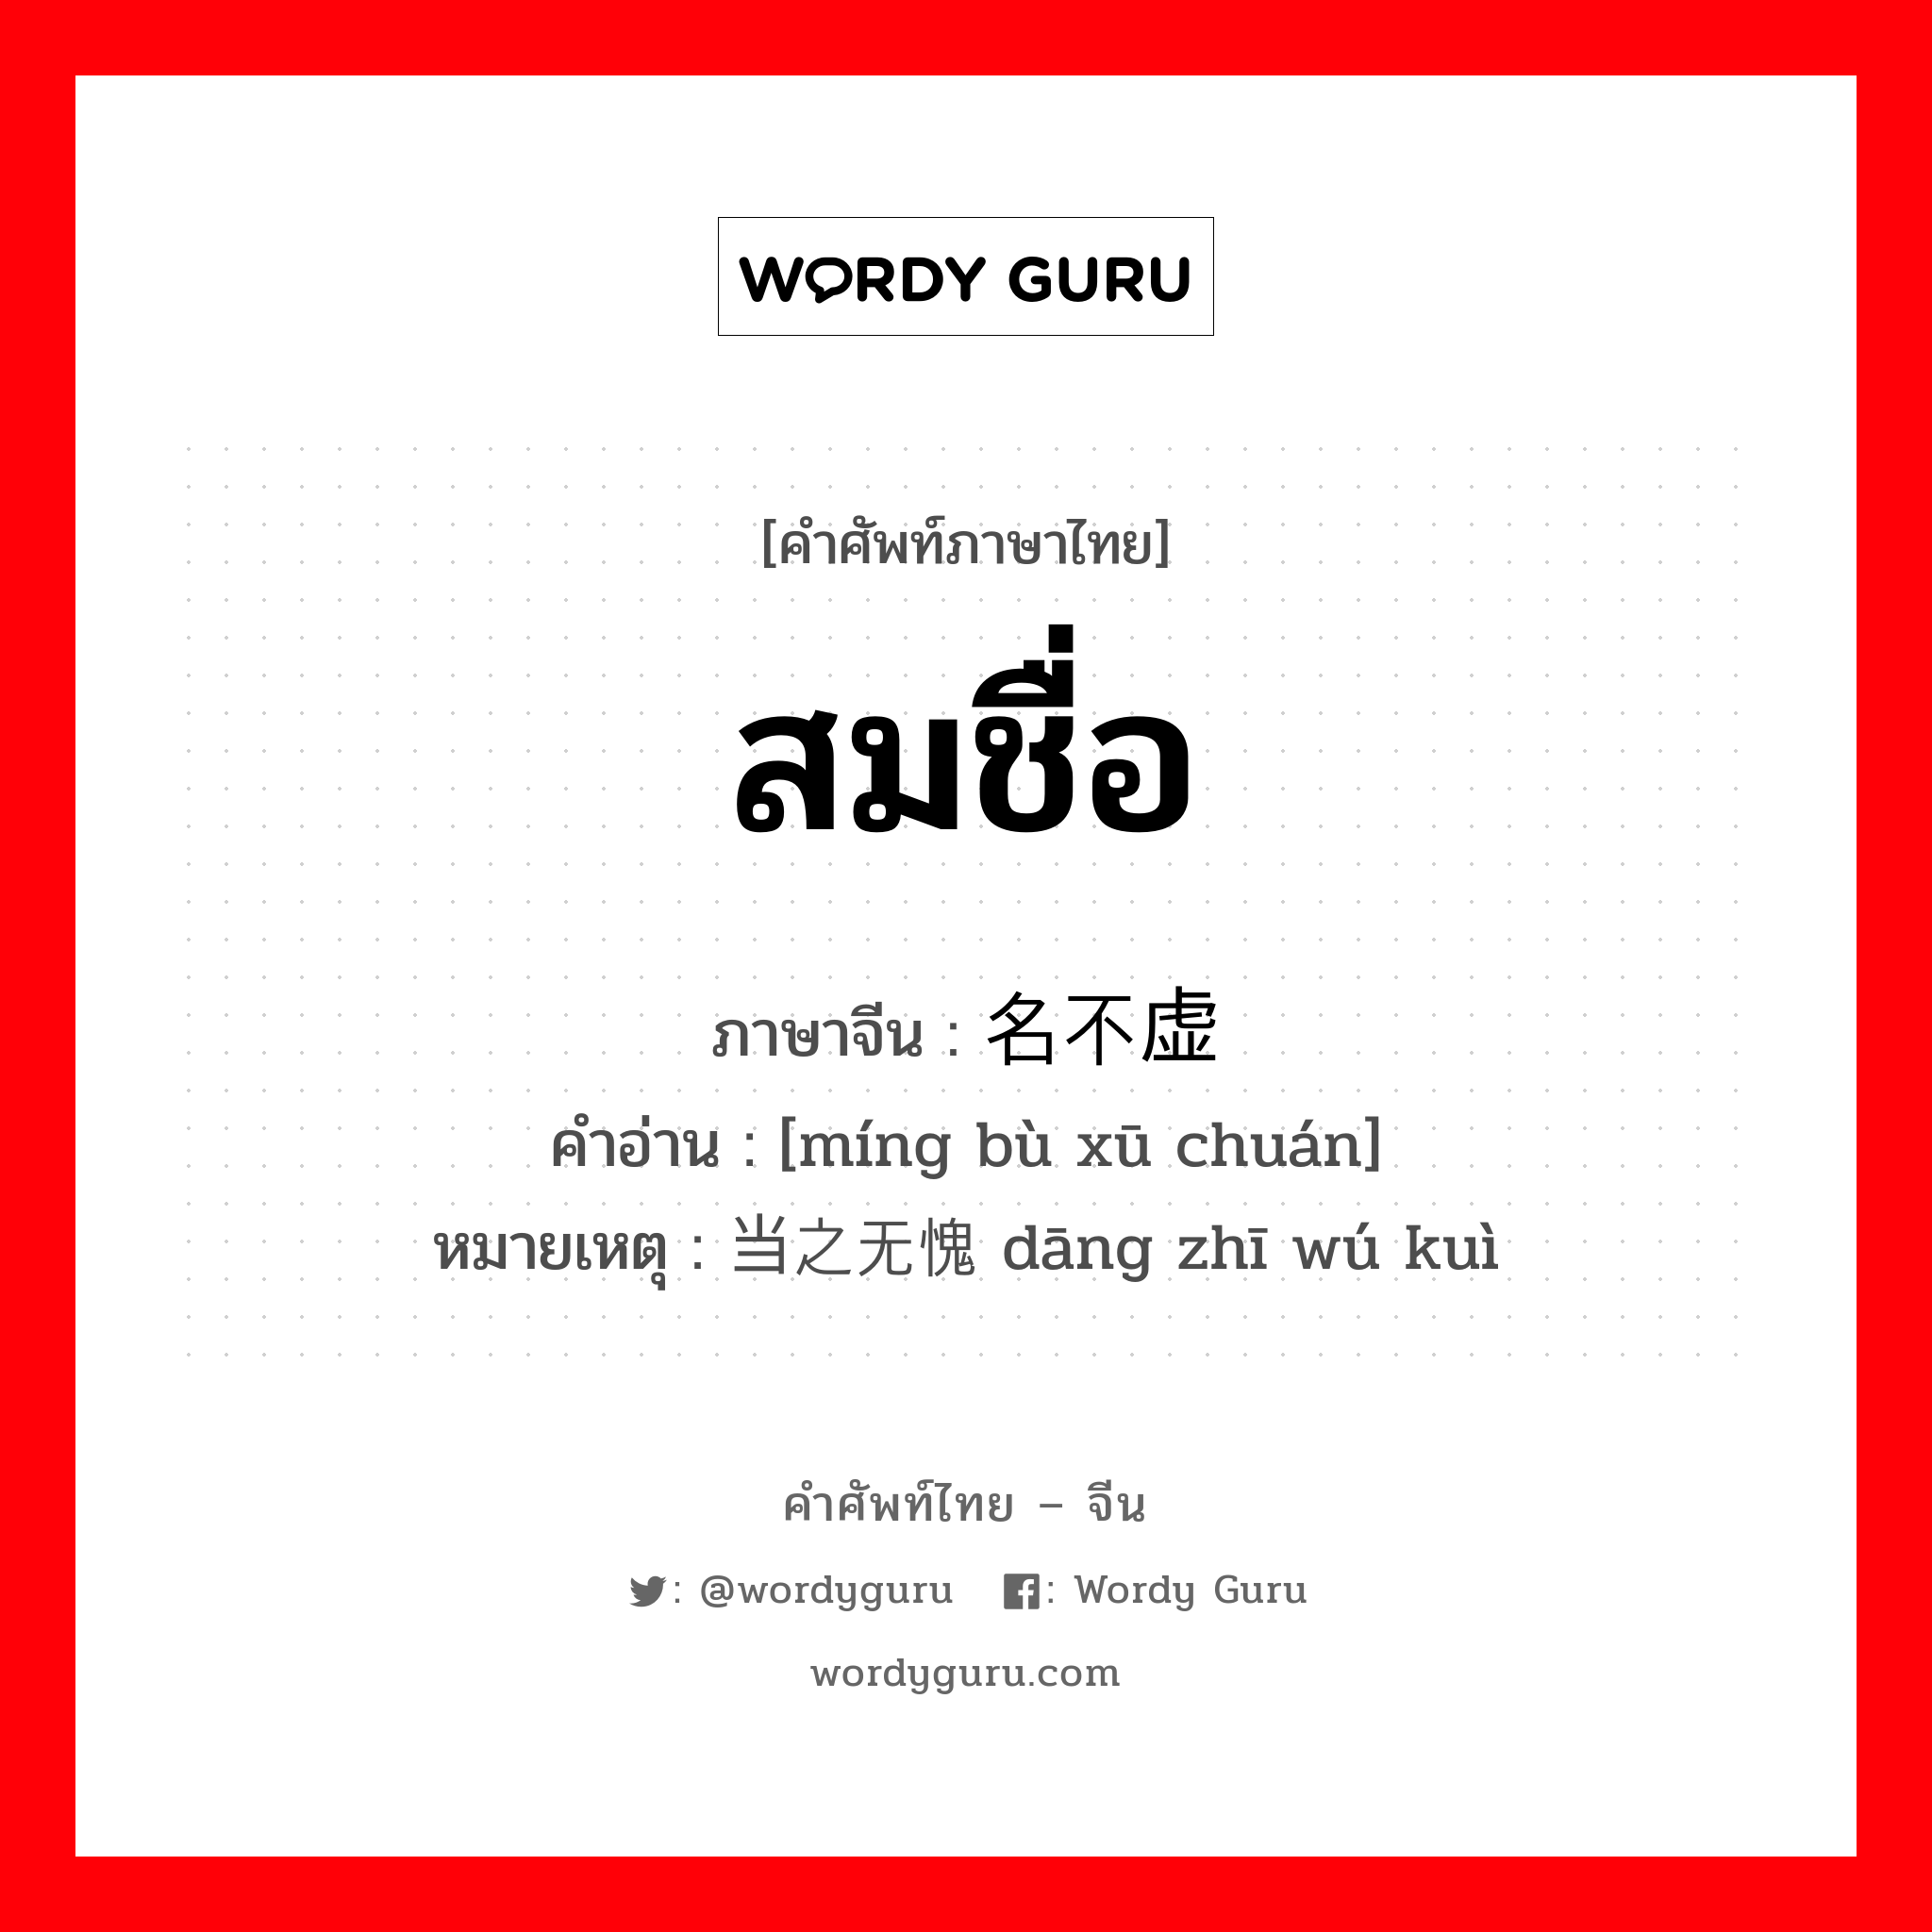 สมชื่อ ภาษาจีนคืออะไร, คำศัพท์ภาษาไทย - จีน สมชื่อ ภาษาจีน 名不虚传 คำอ่าน [míng bù xū chuán] หมายเหตุ 当之无愧 dāng zhī wú kuì